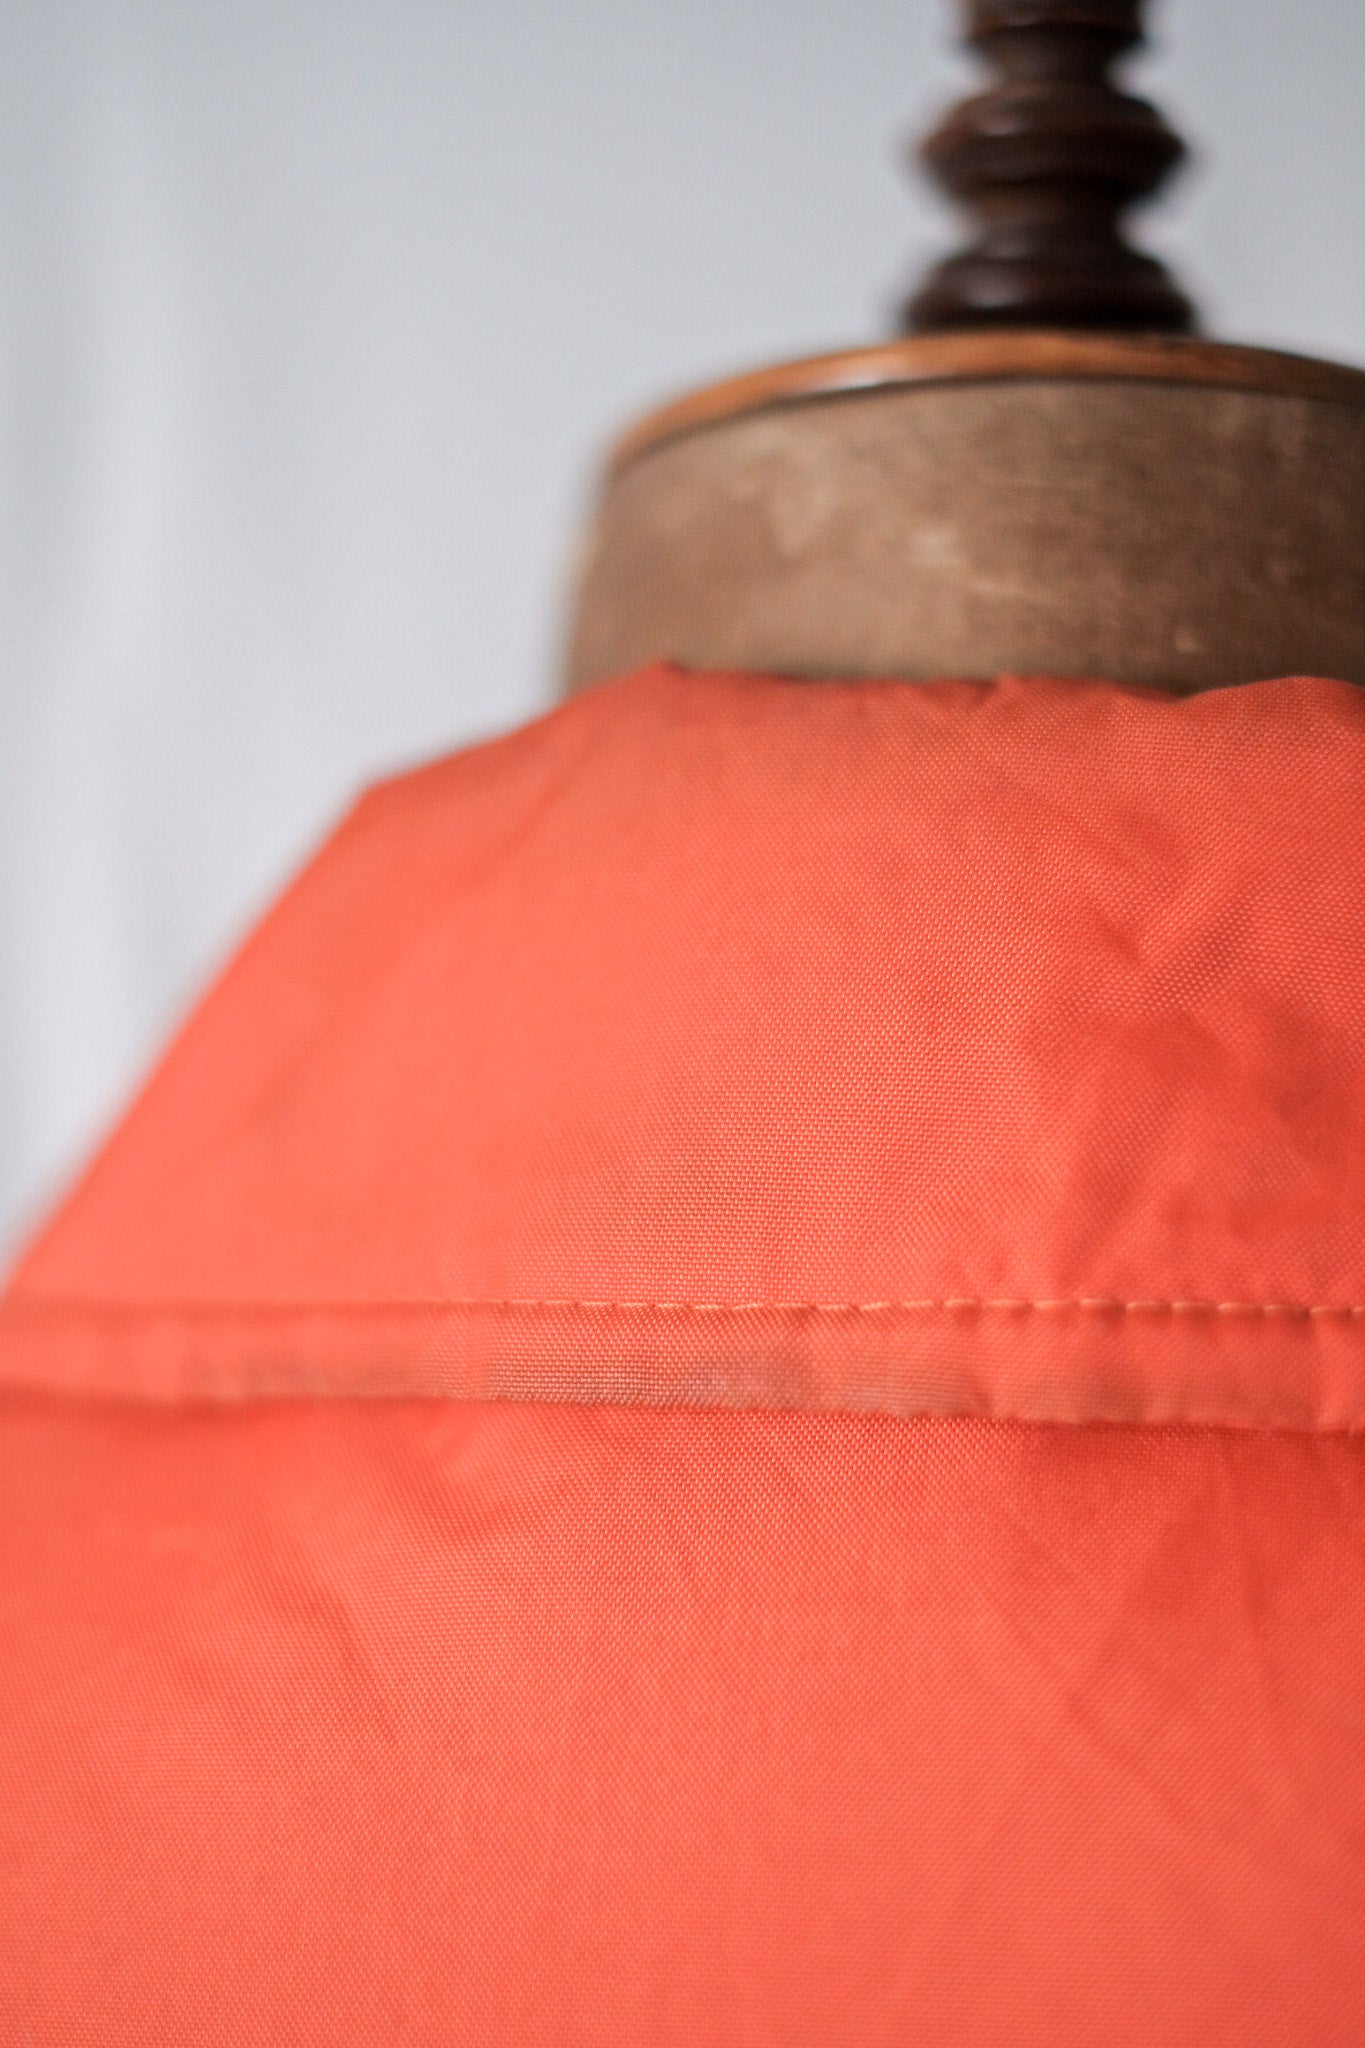 [~ 60's] British vintage orange nylon jacket "henri-rloyd"